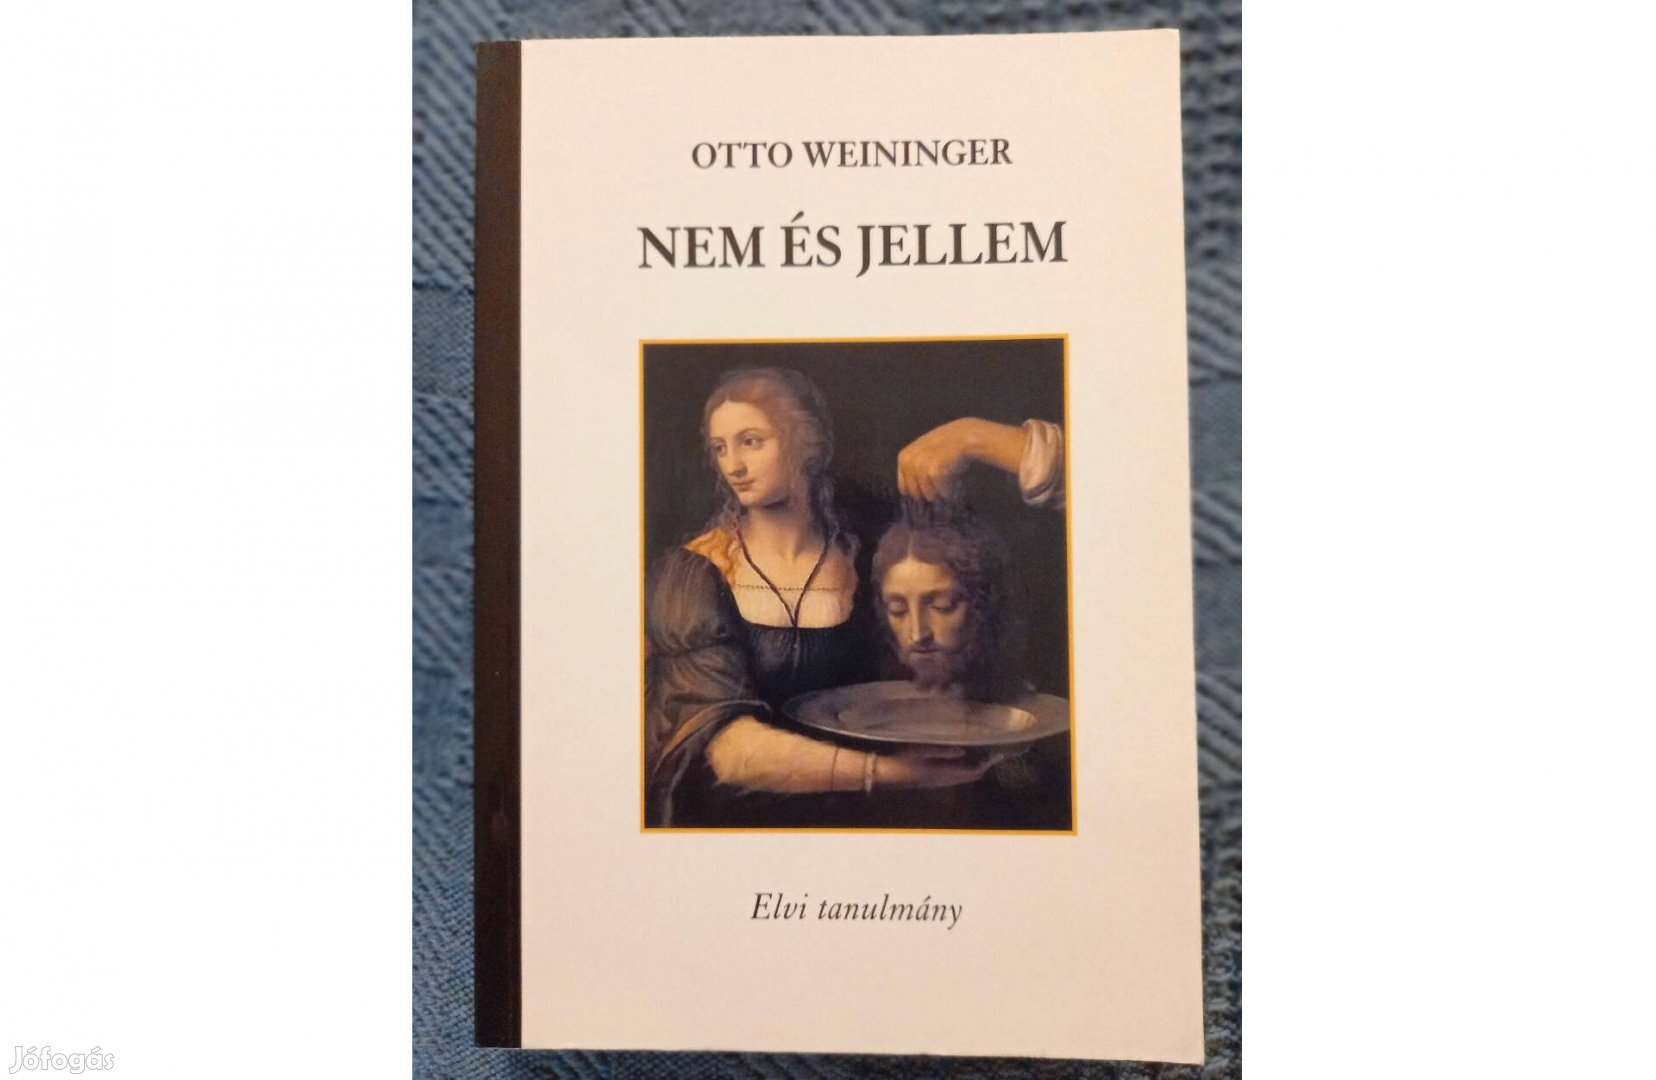 Otto Weininger: Nem és jellem (Elvi tanulmány) c. könyv eladó